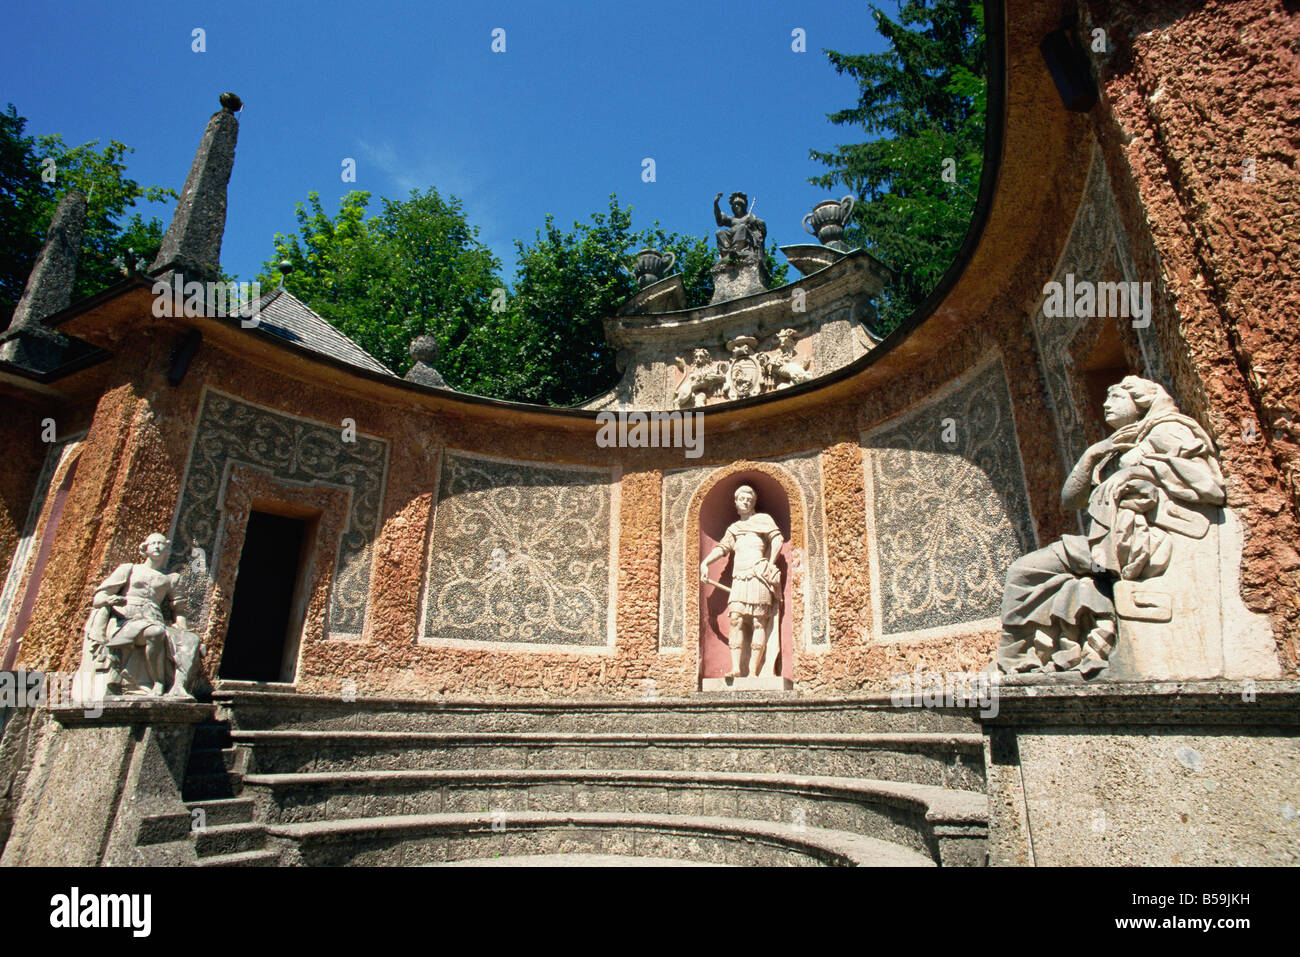 Fontaine de jardin d'agrément Schloss Hellbrunn près de Salzbourg Autriche Europe Banque D'Images